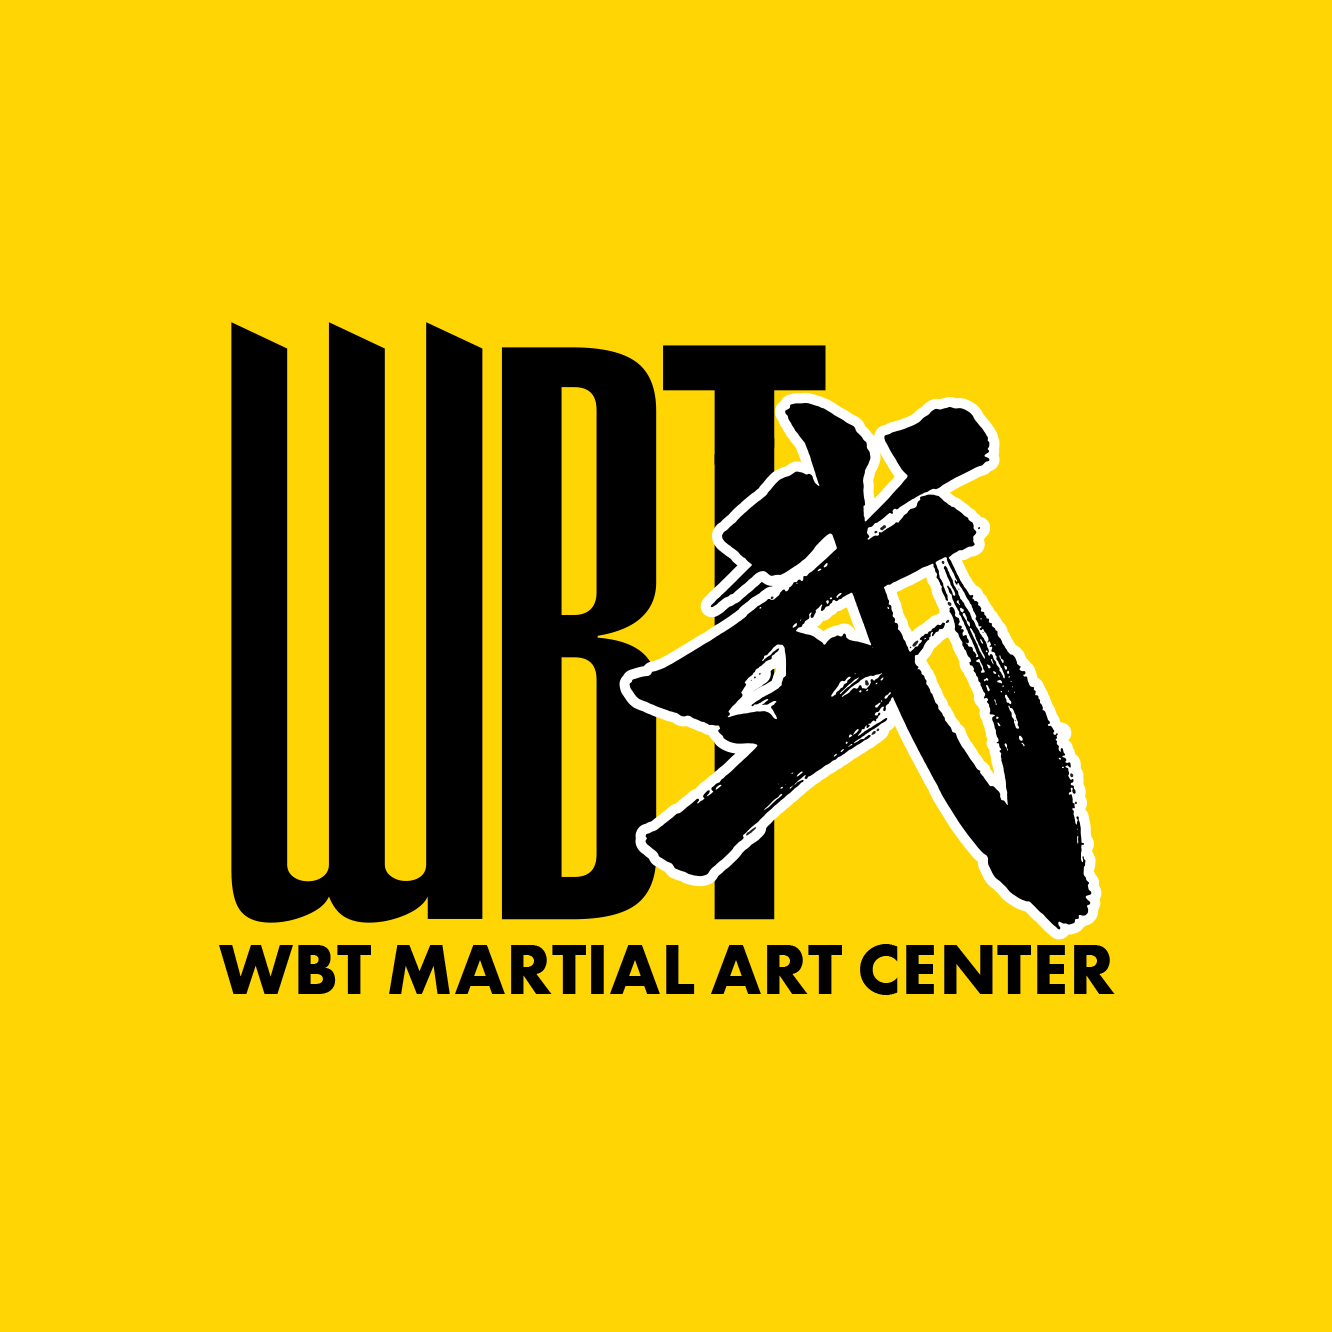 Wbt Martial Art Center